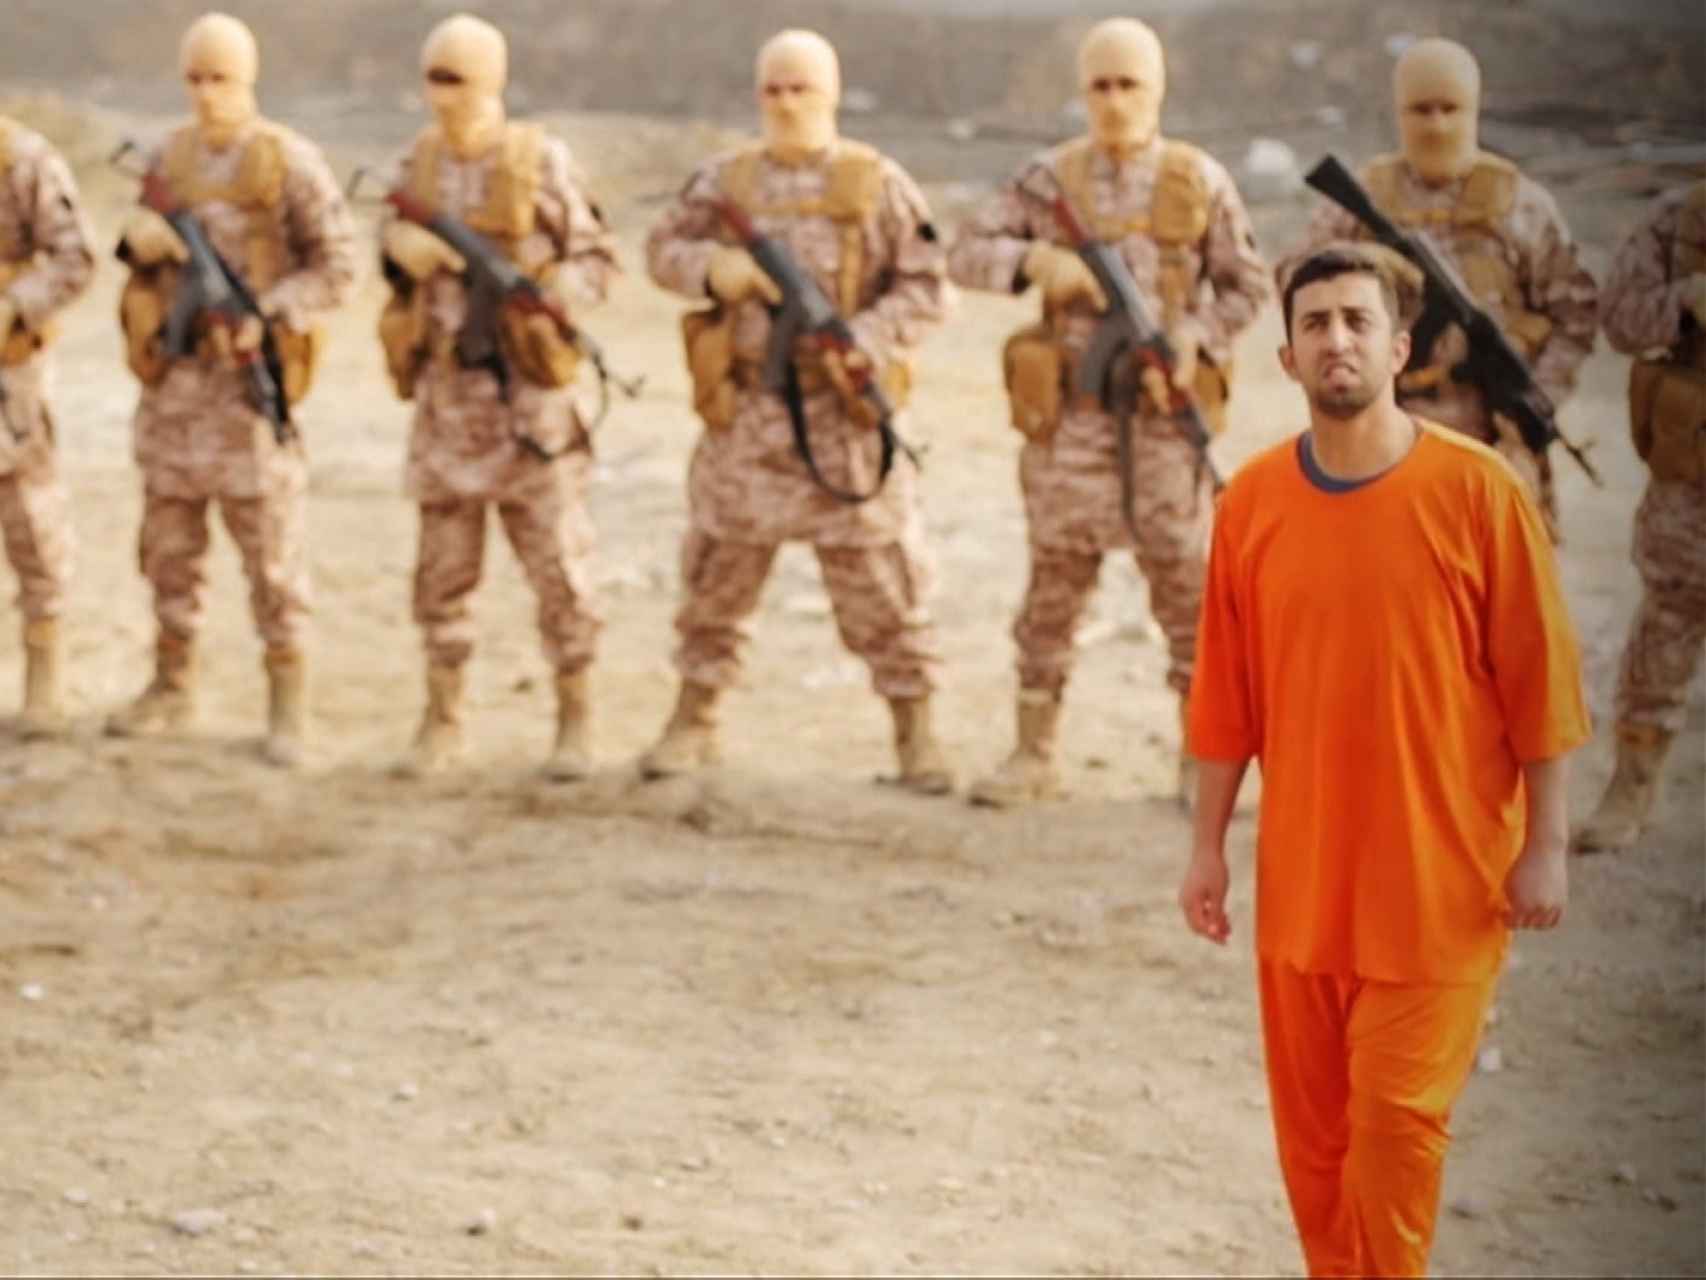 Imagen de uno de los vídeos propagandísticos del ISIS